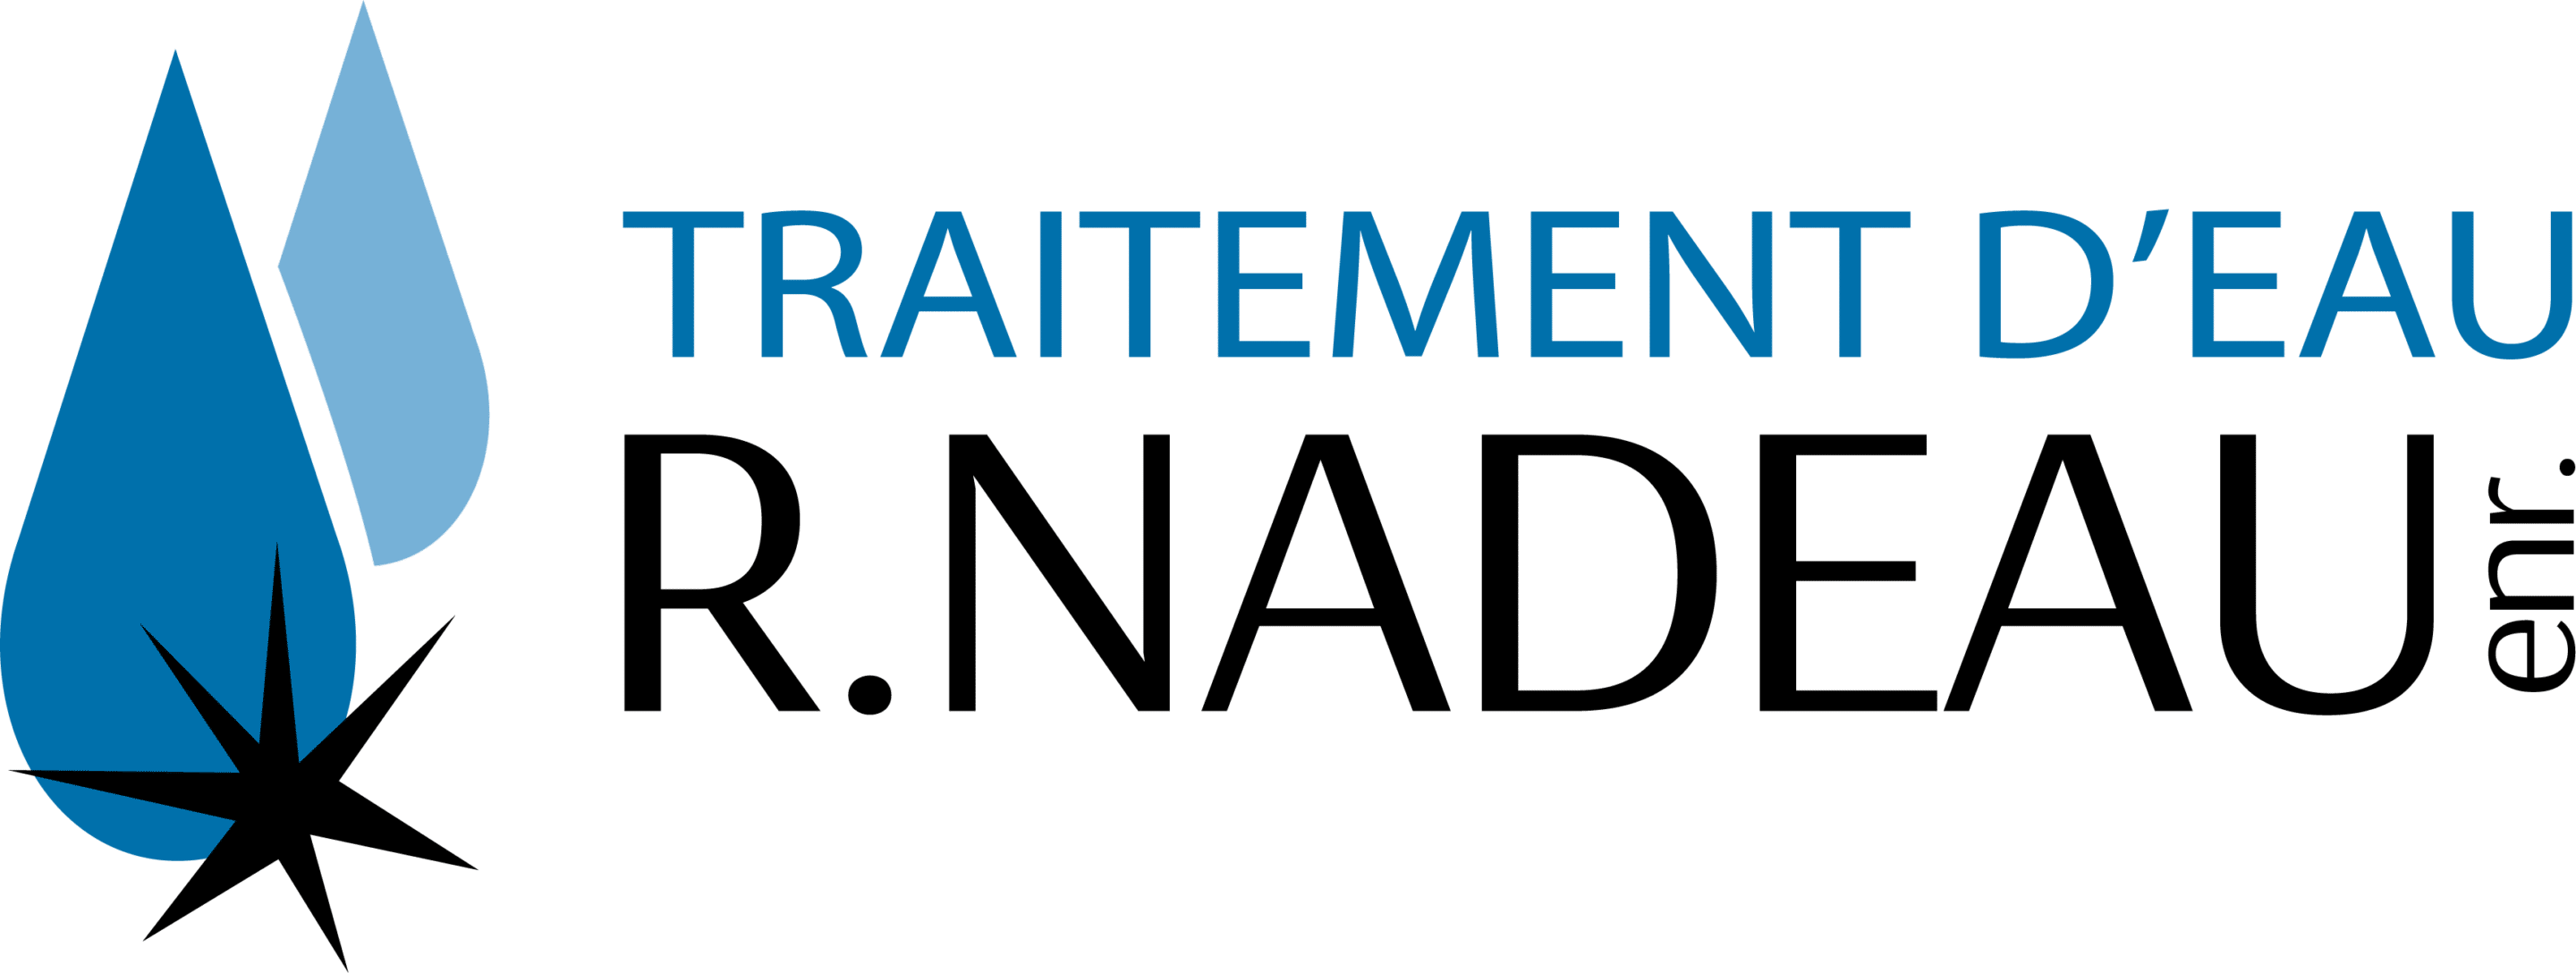 Traitement d'eau R. Nadeau, Logo